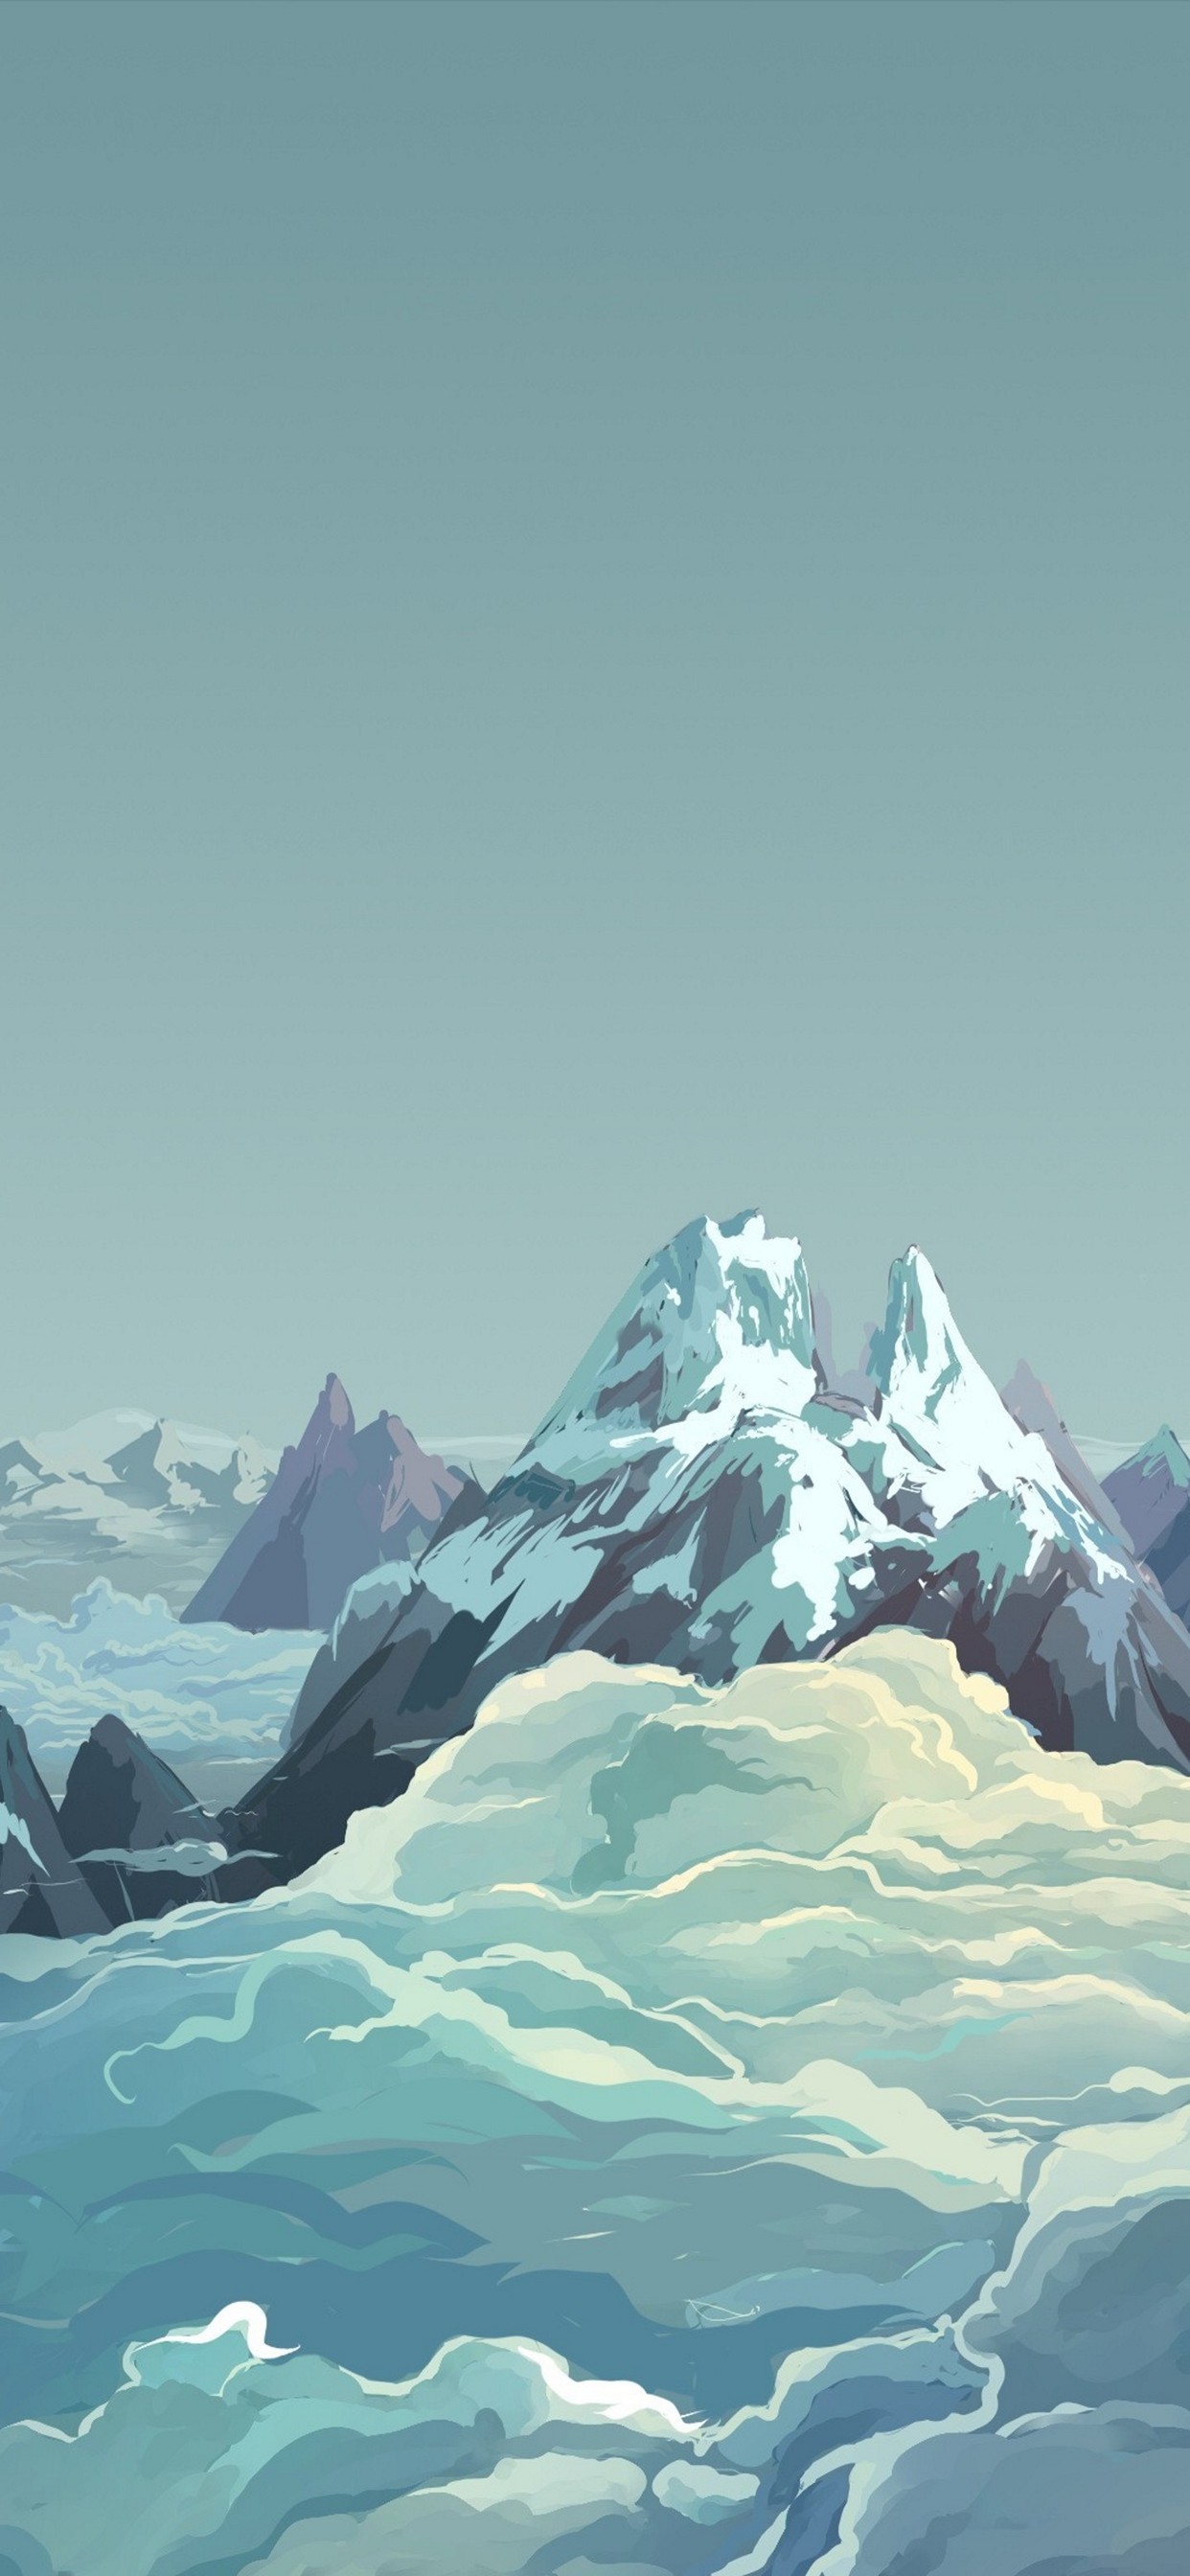 綺麗な雪山と雲海のイラスト Iphone 13 Pro Max壁紙 待ち受け スマラン